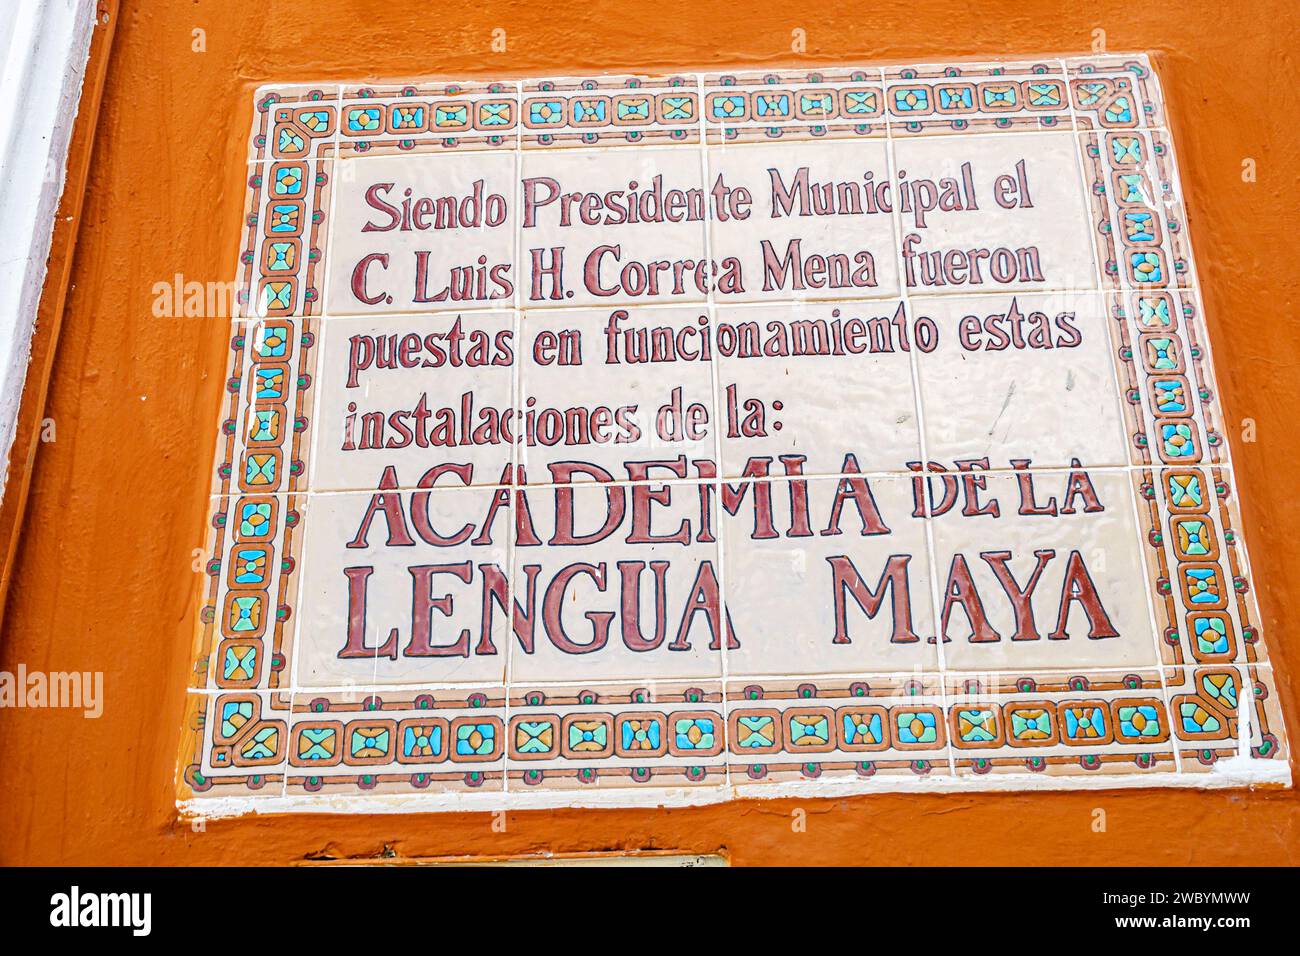 Merida Mexico,centro historico central historic district,Instituto Municipal para el Fortalecimiento de la Cultura Maya,Municipal Institute for the St Stock Photo